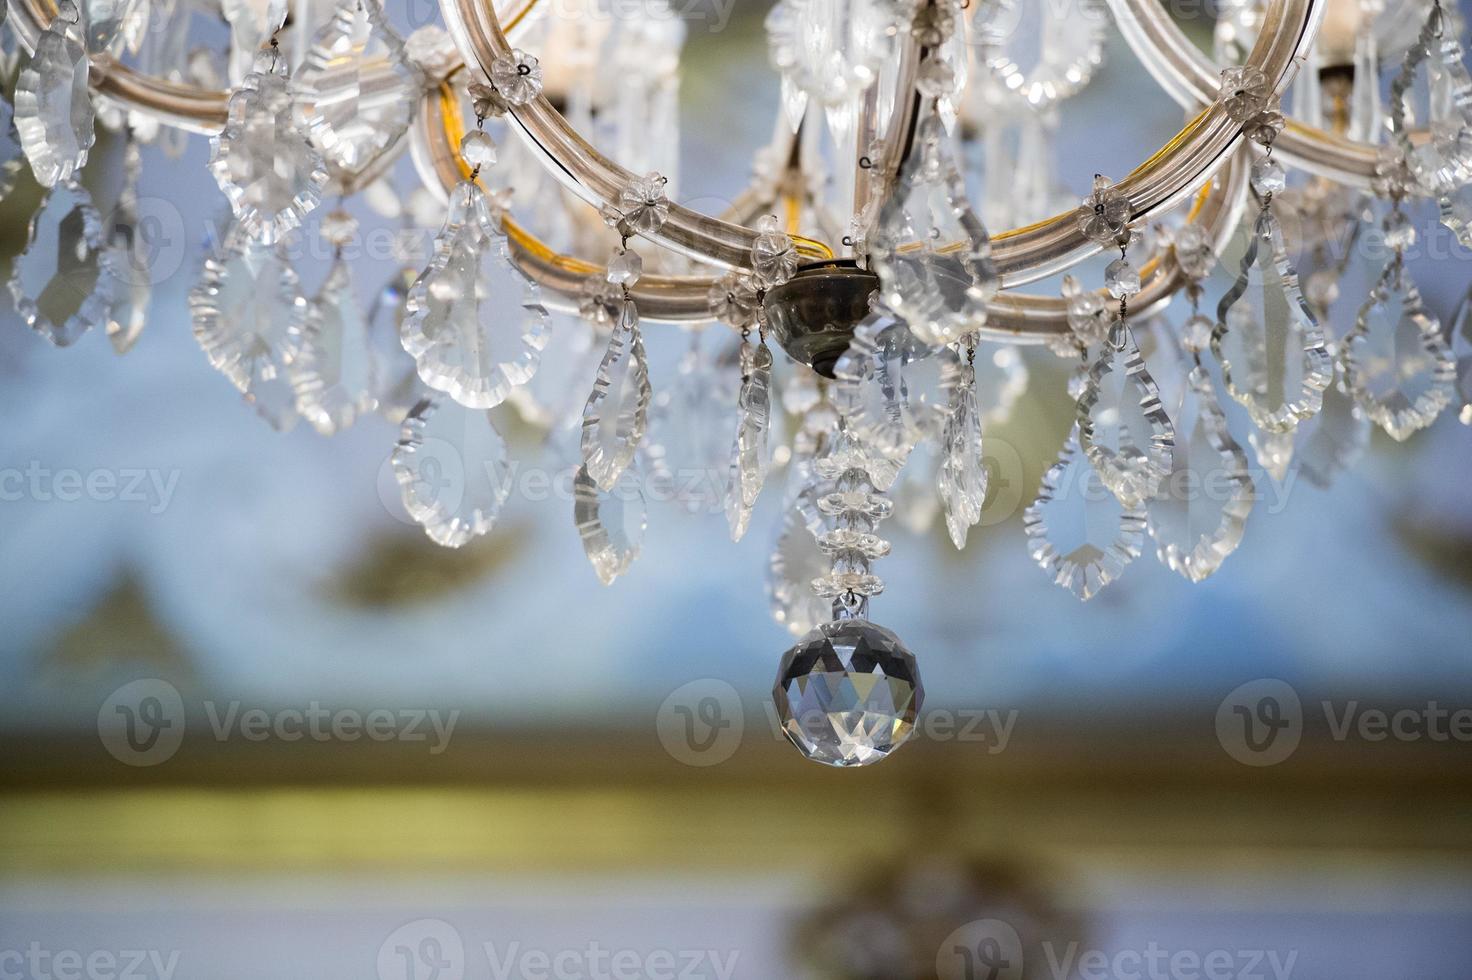 glas hanger detail van hal kroonluchter foto